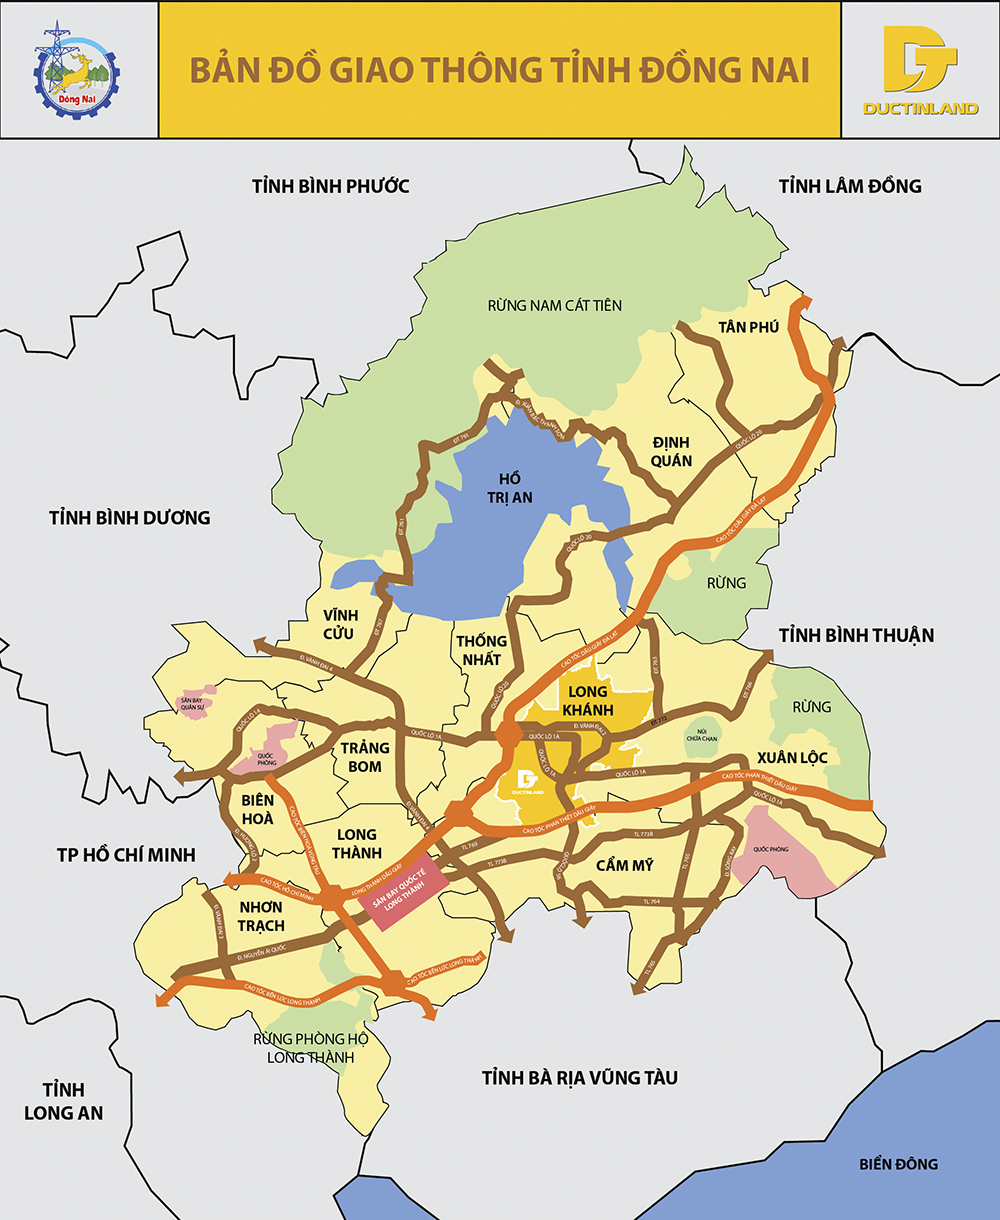 Bản đồ hành chính và bản đồ giao thông tỉnh Đồng Nai